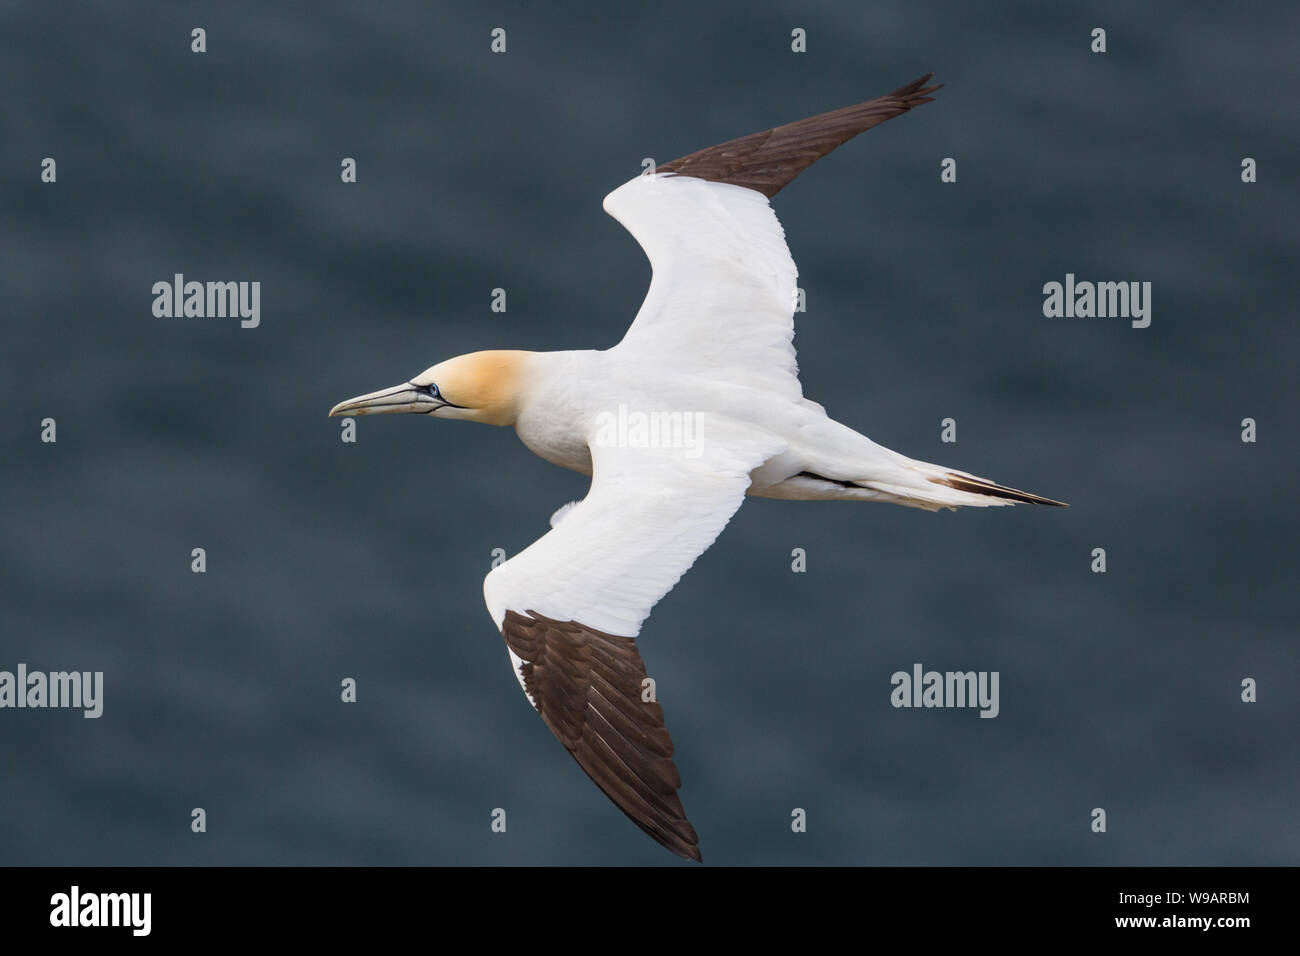 Gannett isolato (Morus bassanus) volare sopra il mare blu, diffondere le ali Foto Stock